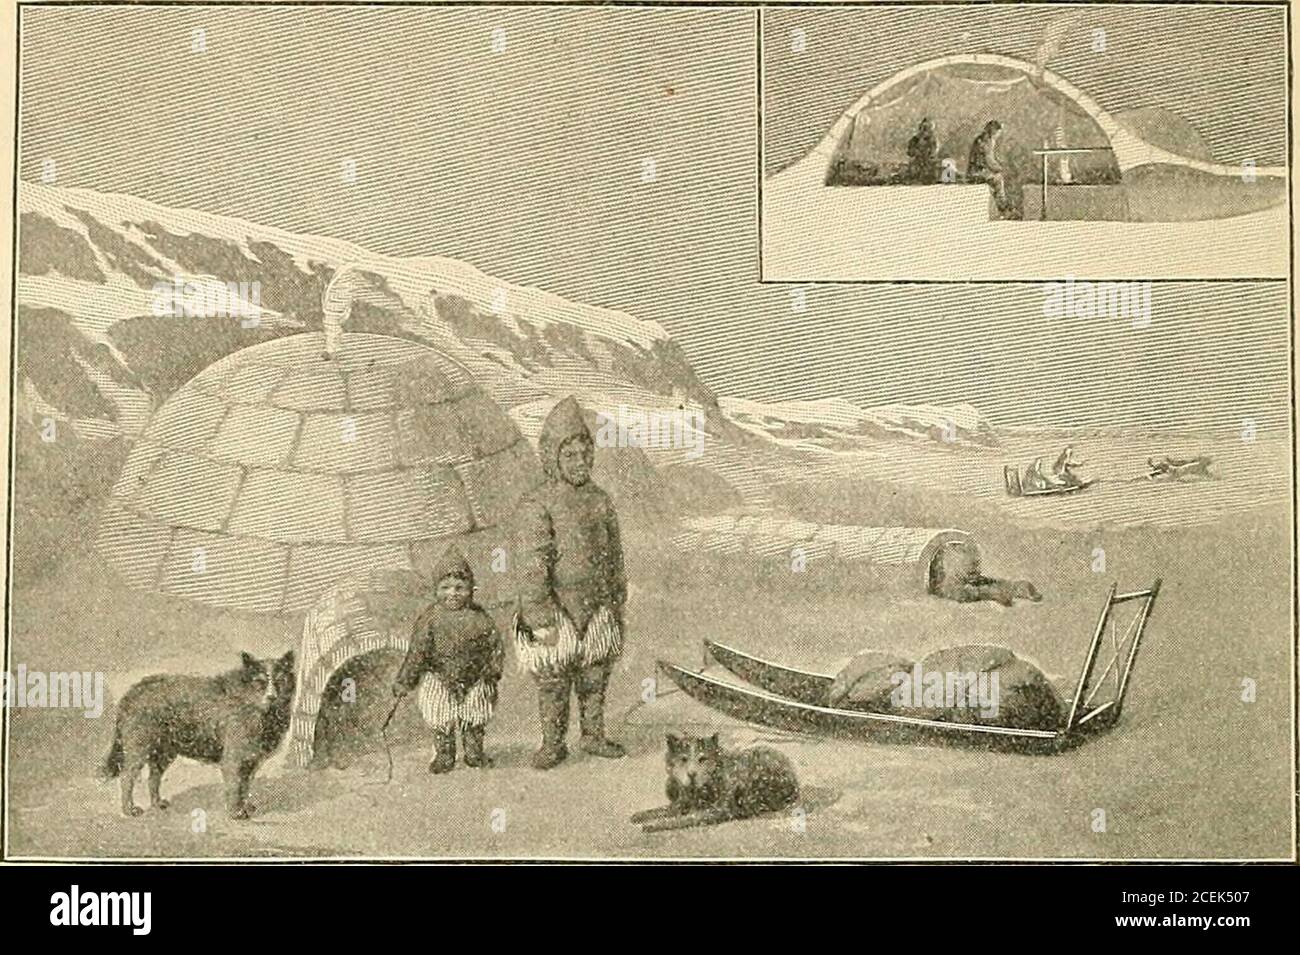 Una geografía completa. El hombre tiene su equipo de perros para dibujar su  trineo sobre el mar congelado. Indios. — los indios estaban originalmente  esparcidos sobre la mayor parte de la